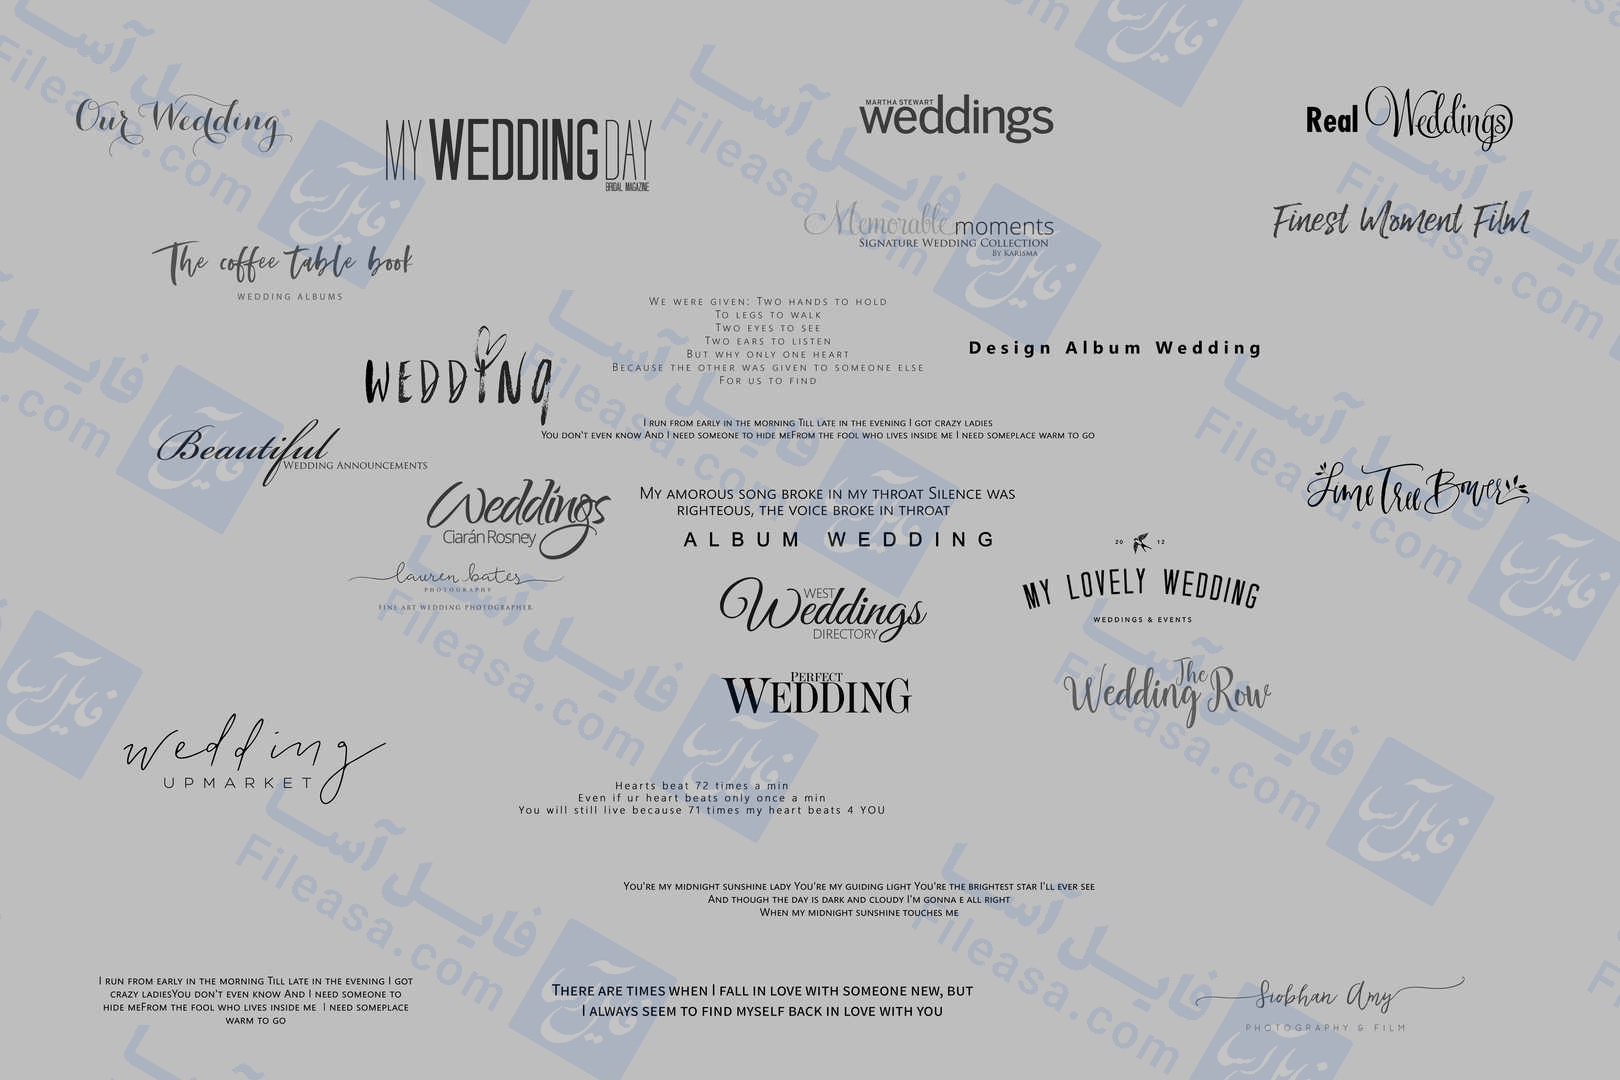 بزرگترین پک تکست ودینگ wedding | انگلیسی فارسی | 500+ تکست حرفه ای | PSD